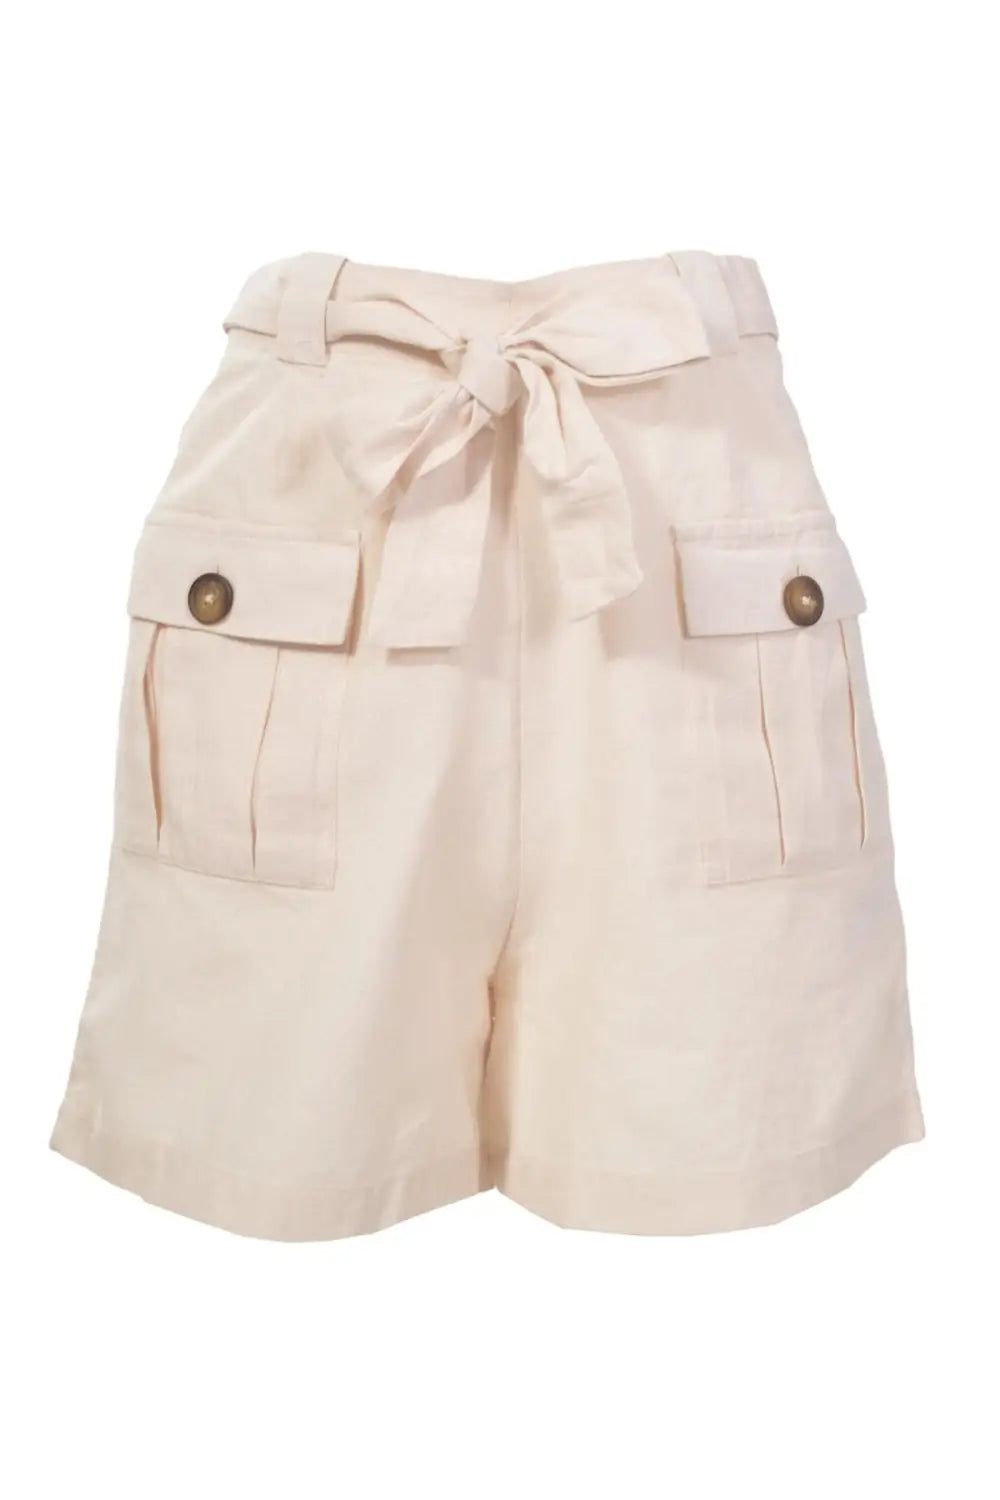 Warehouse Safari Shorts